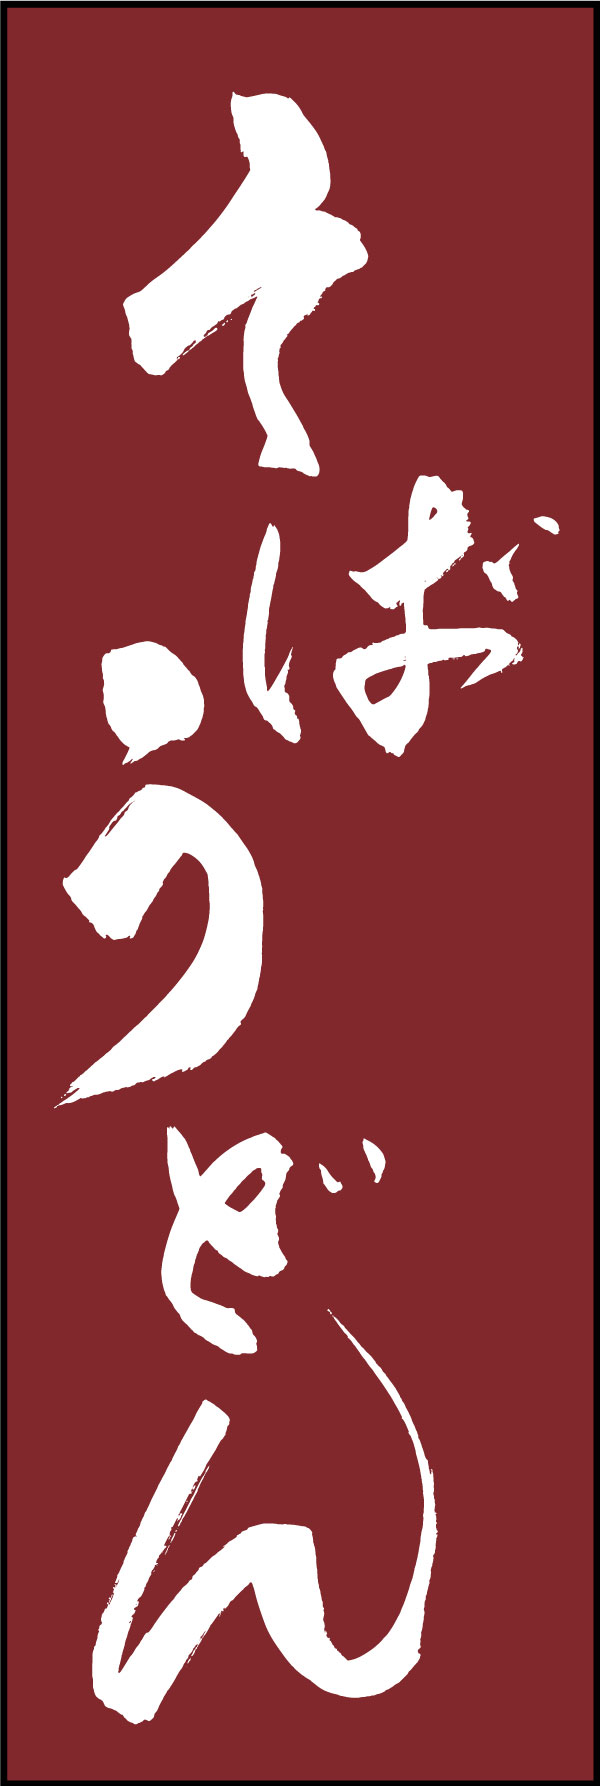 そばうどん 139_01 「そばうどん」の幟です。江戸文字職人 加藤木大介氏による、手書きの筆文字です。完全書き下ろし、唯一無二の幟は当店だけのオリジナル商品です。（Y.M）